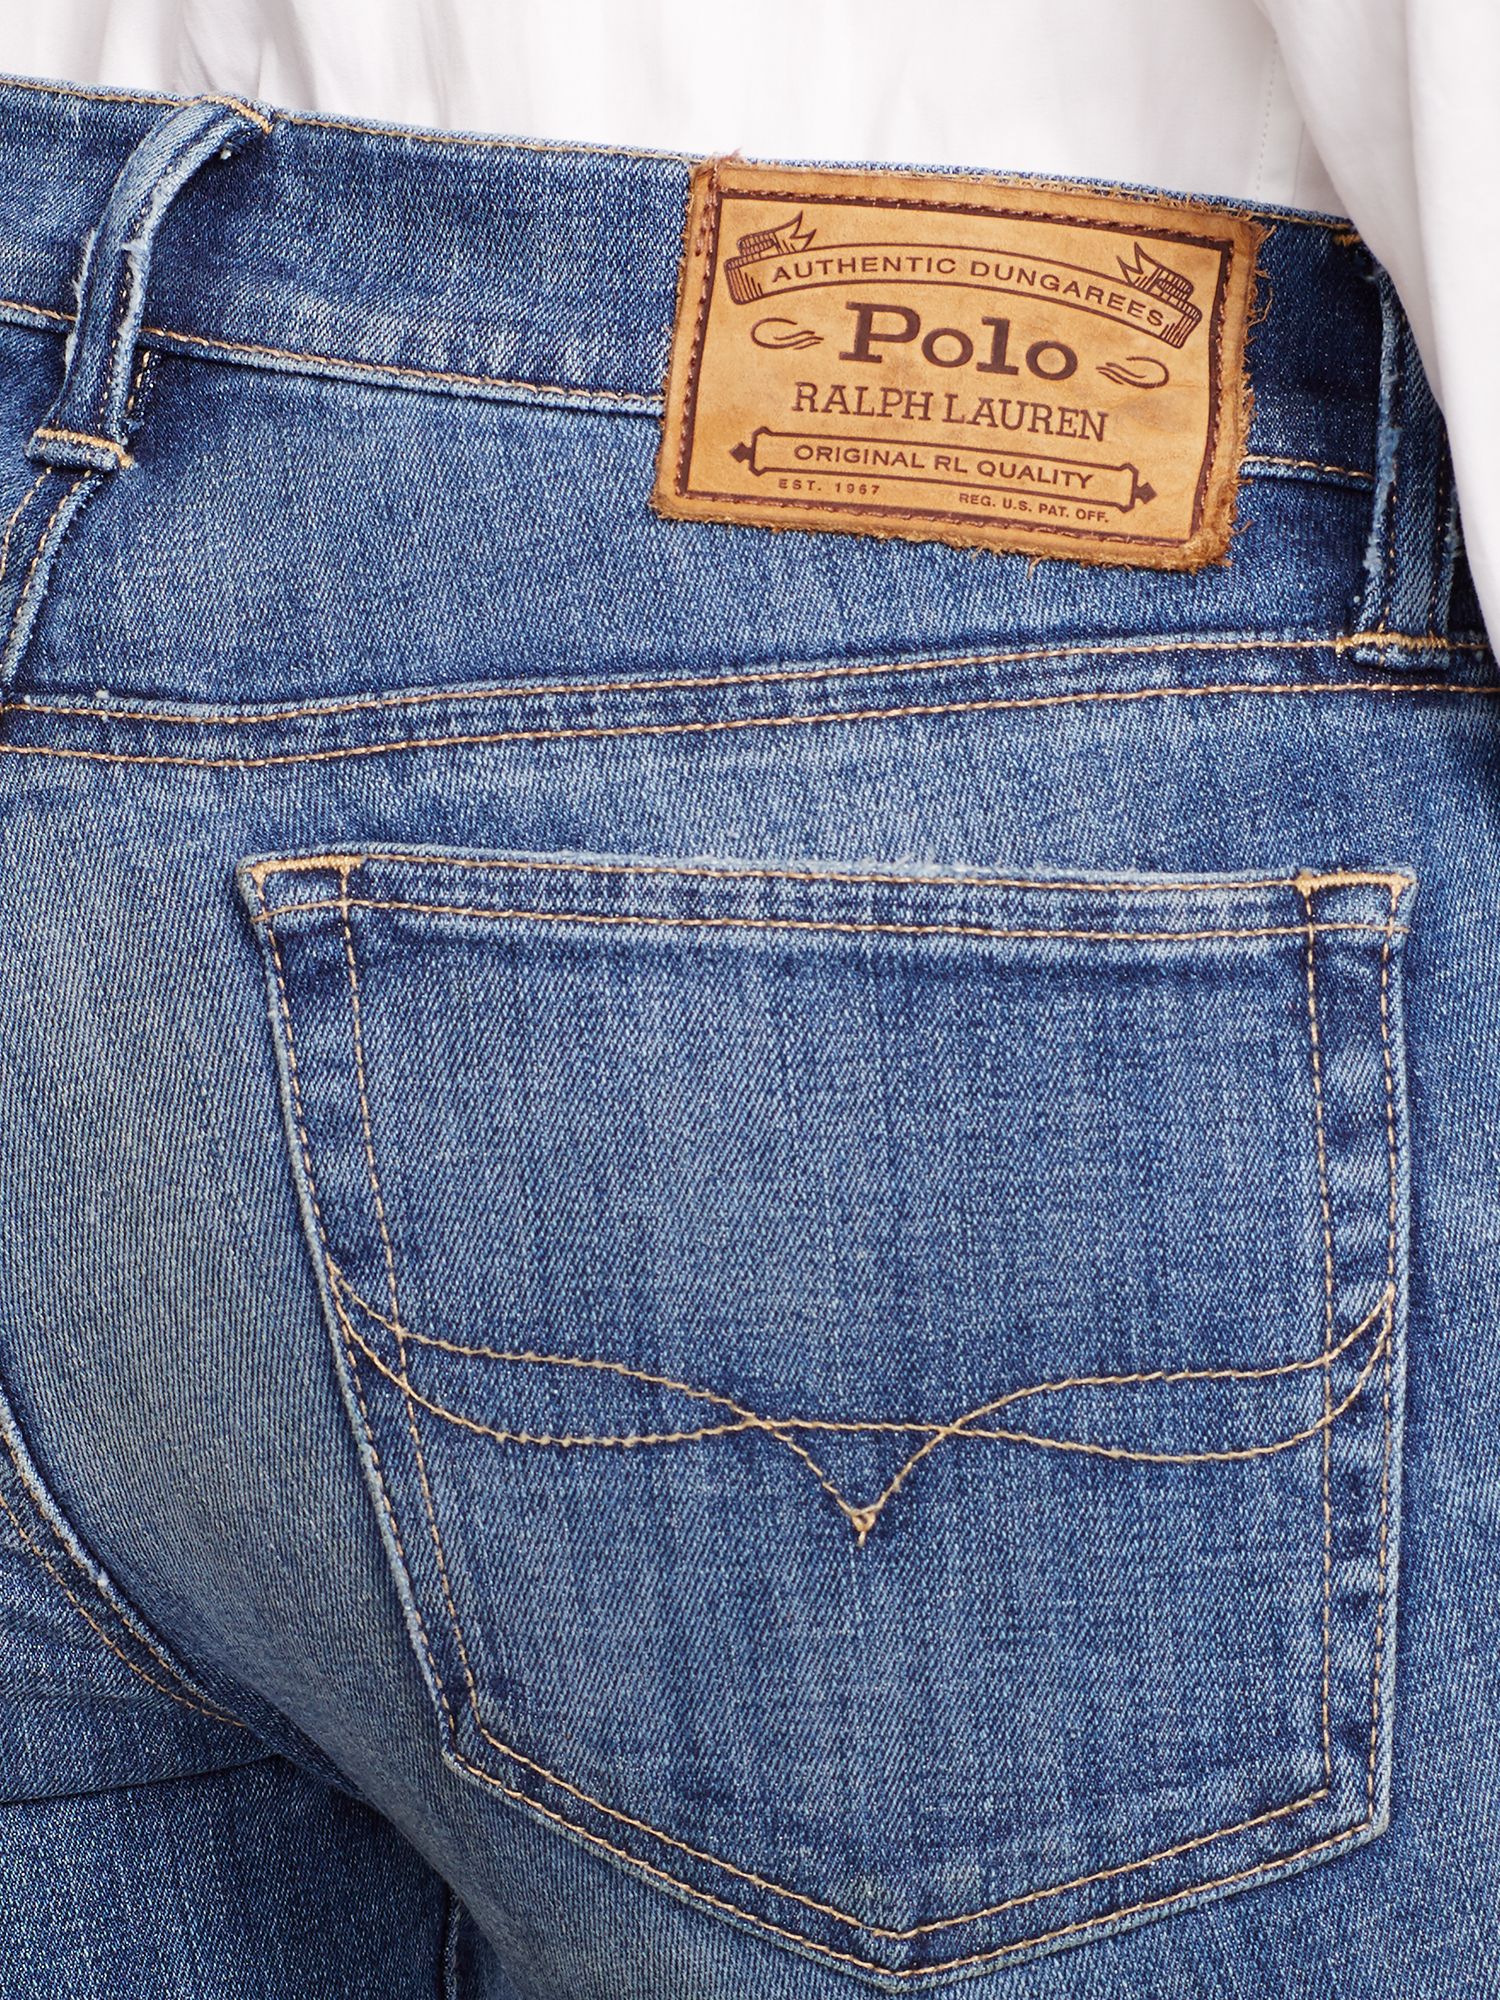 polo ralph lauren womens jeans